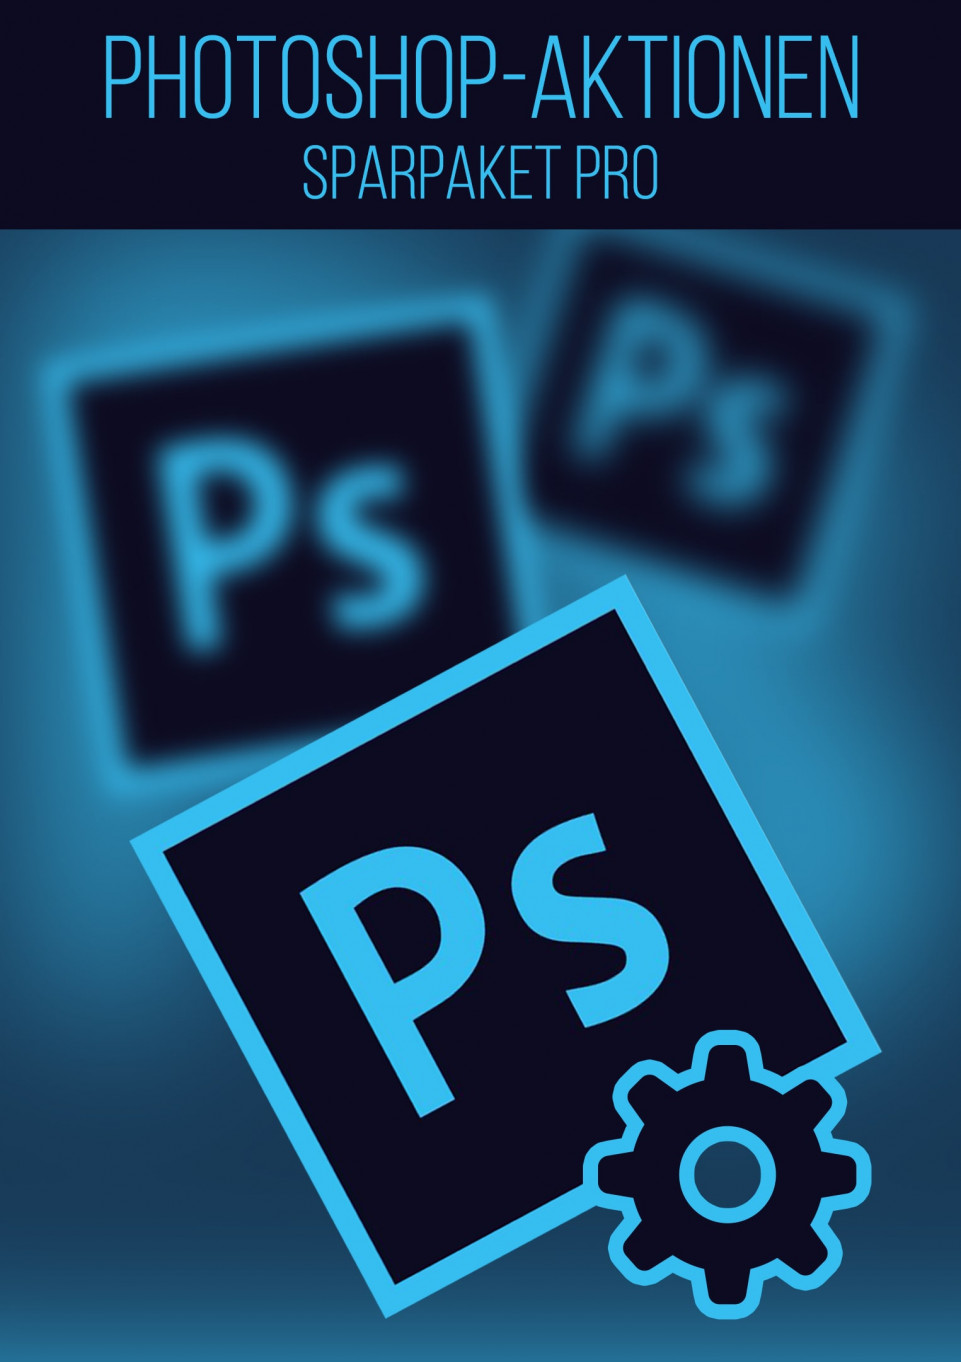 Photoshop-Aktionen-Sparpaket Pro